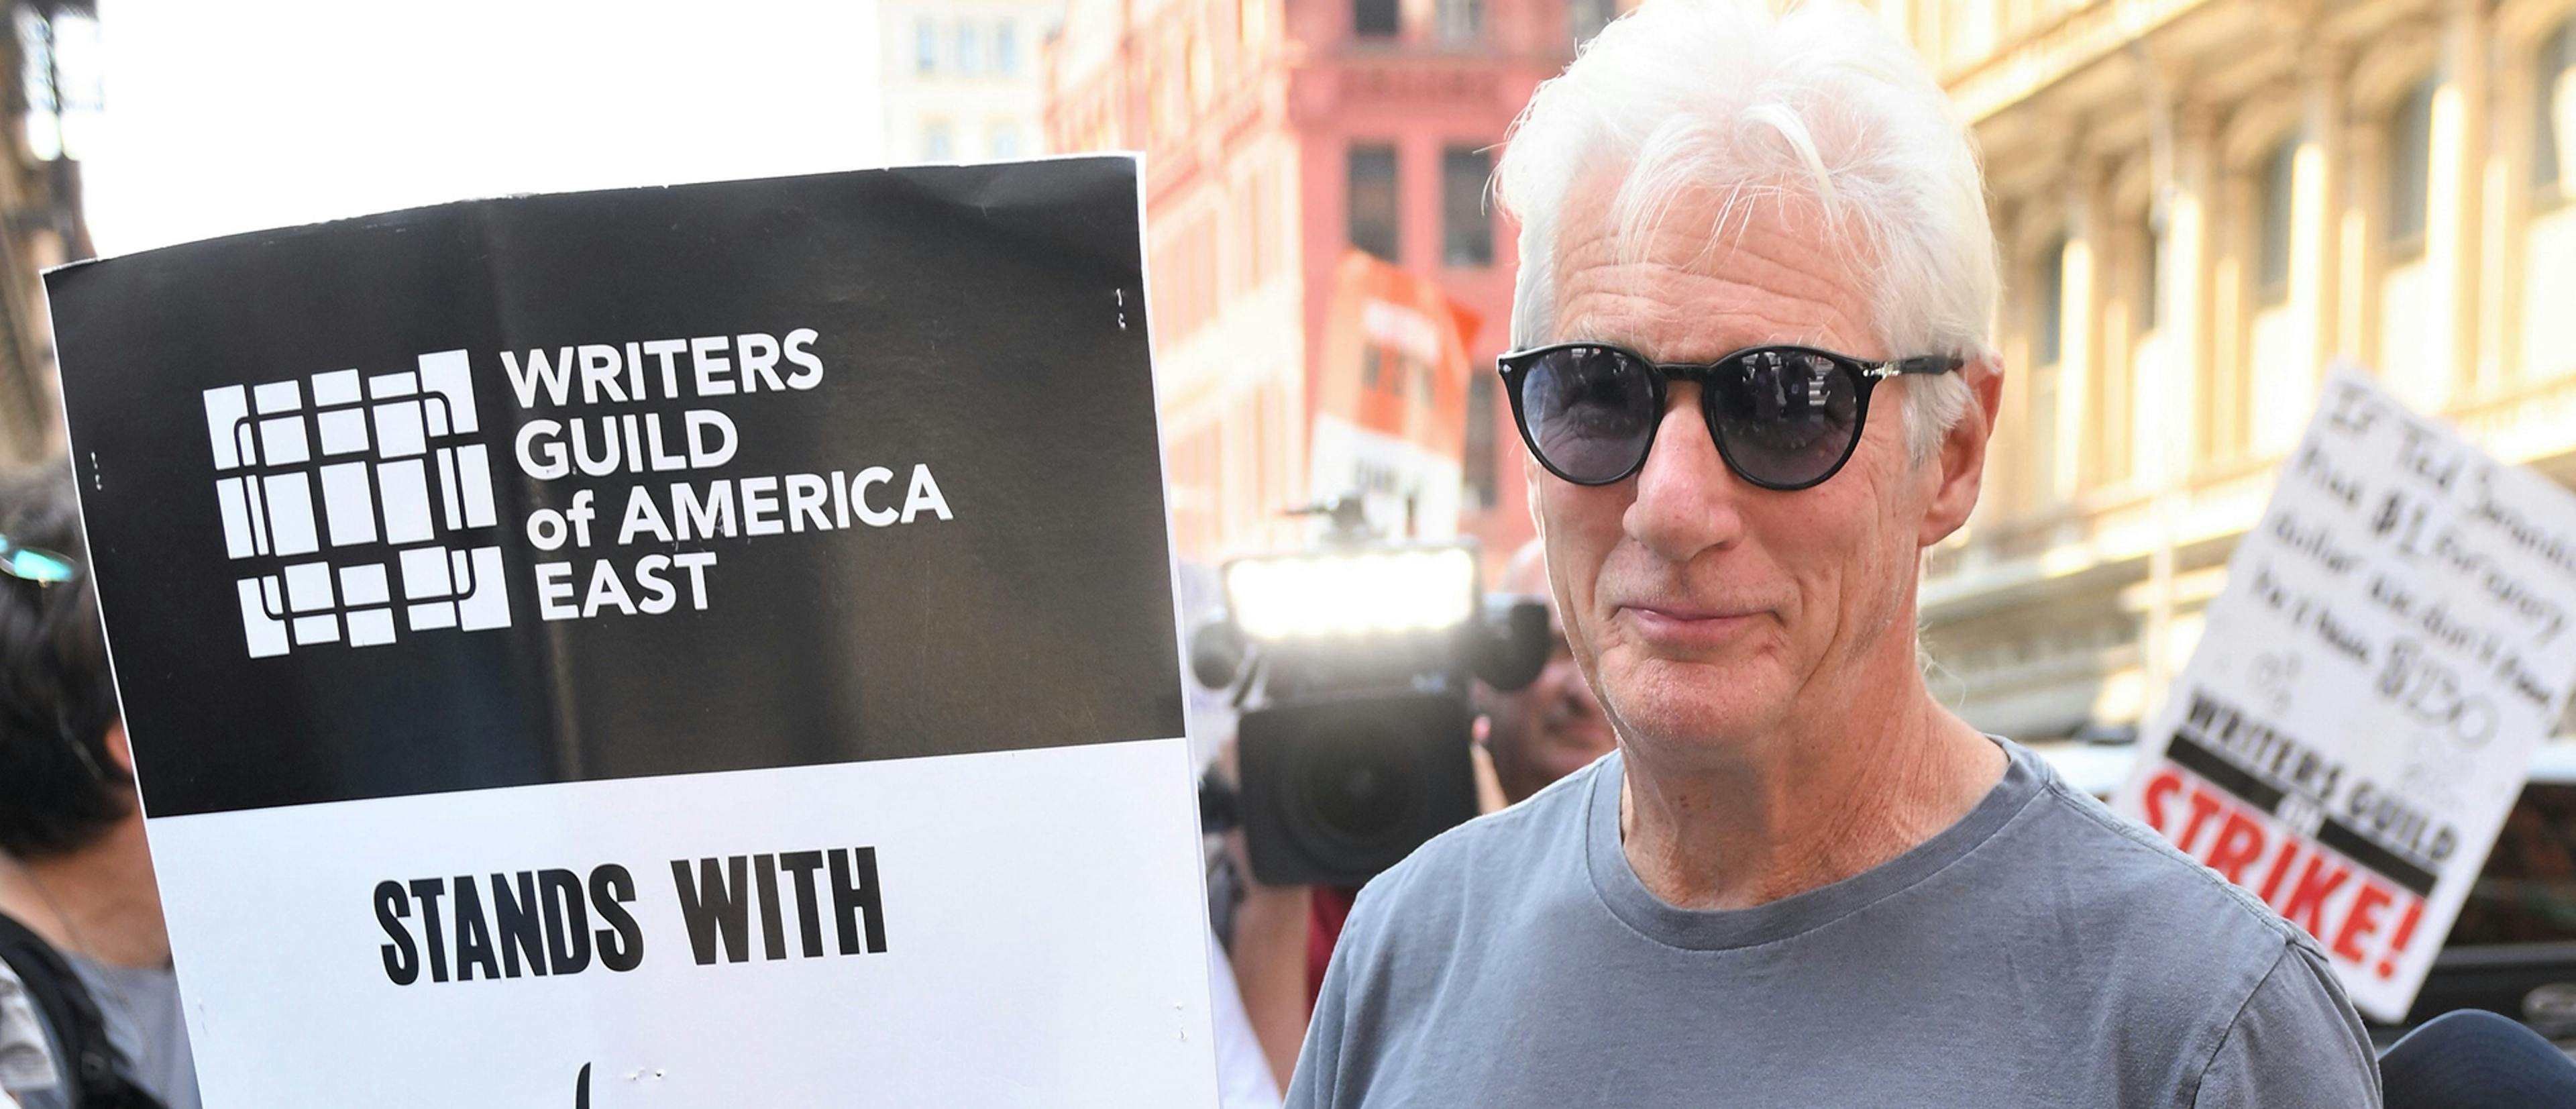 Richard Gere, en un piquete en Nueva York durante la huelga de actores y con un cartel de apoyo a sus compañeros guionistas